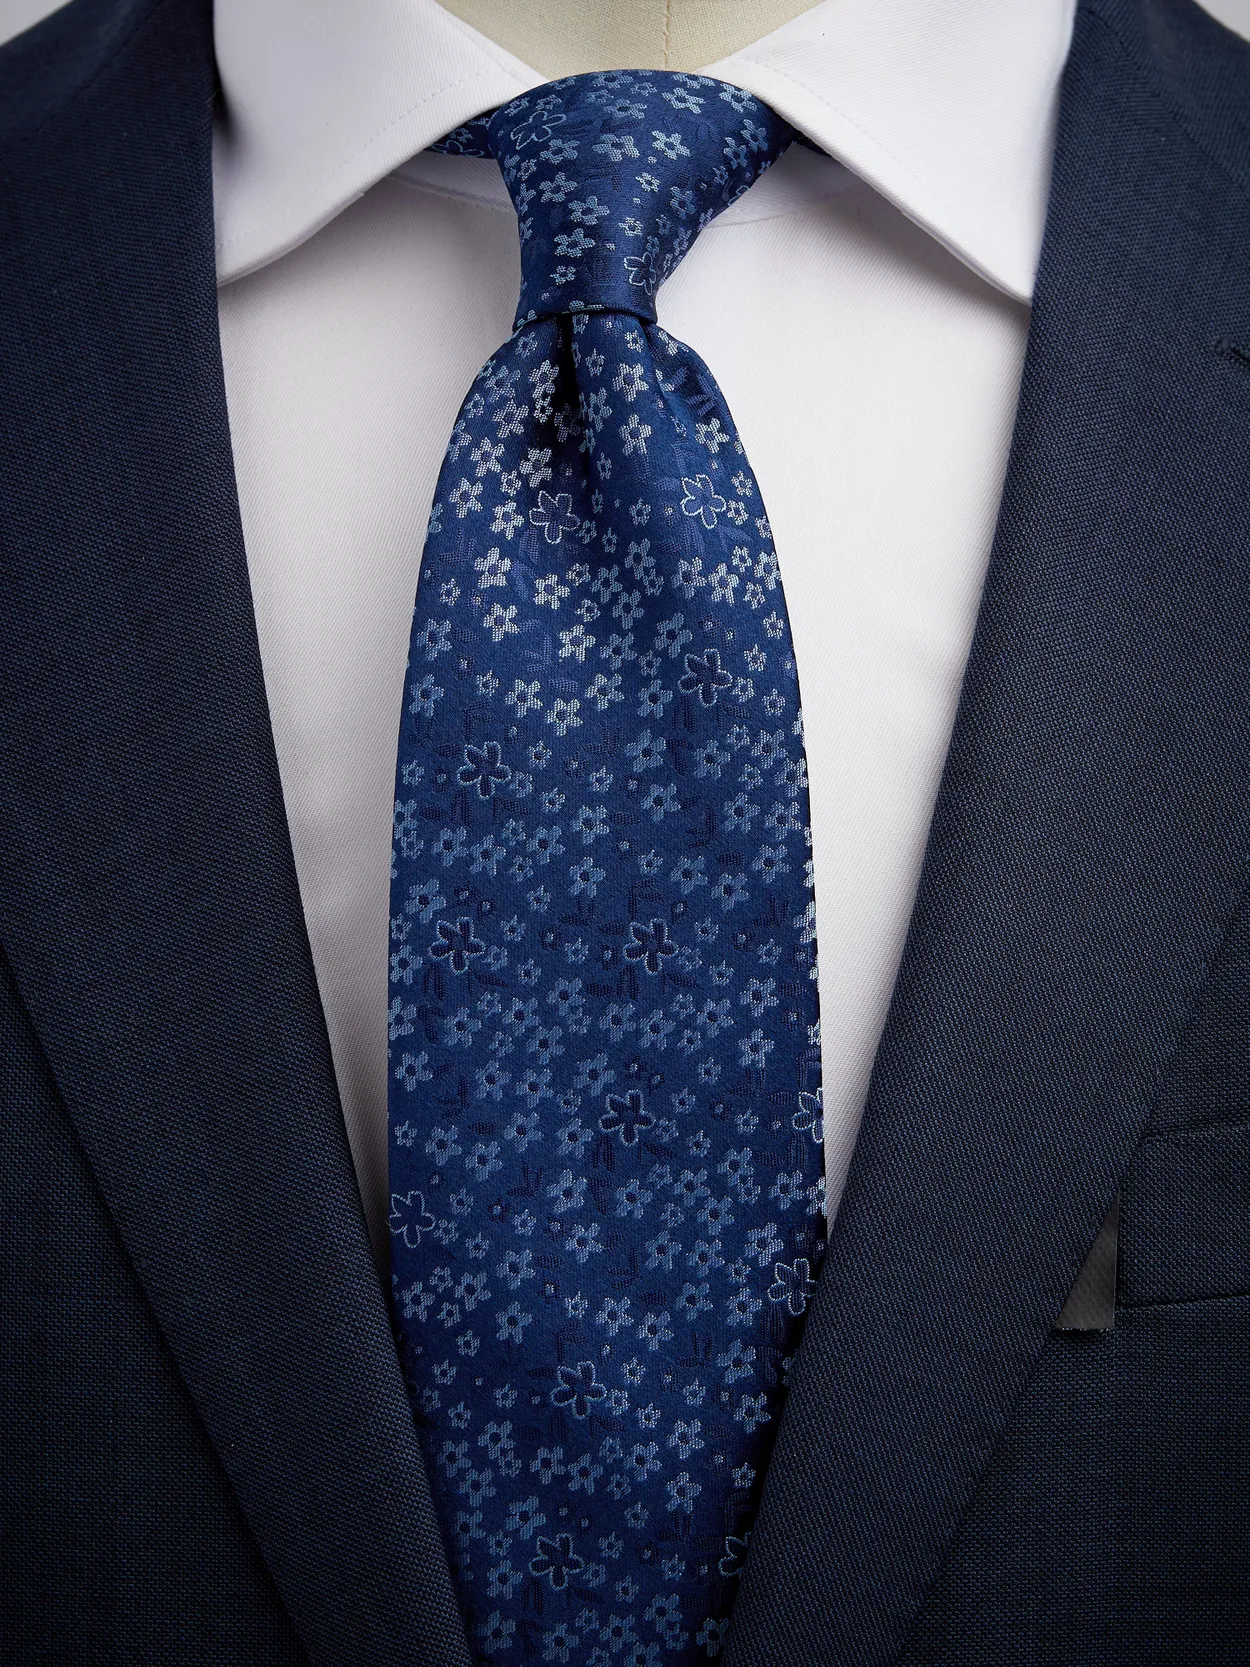 Blue & Light Blue Tie Floral